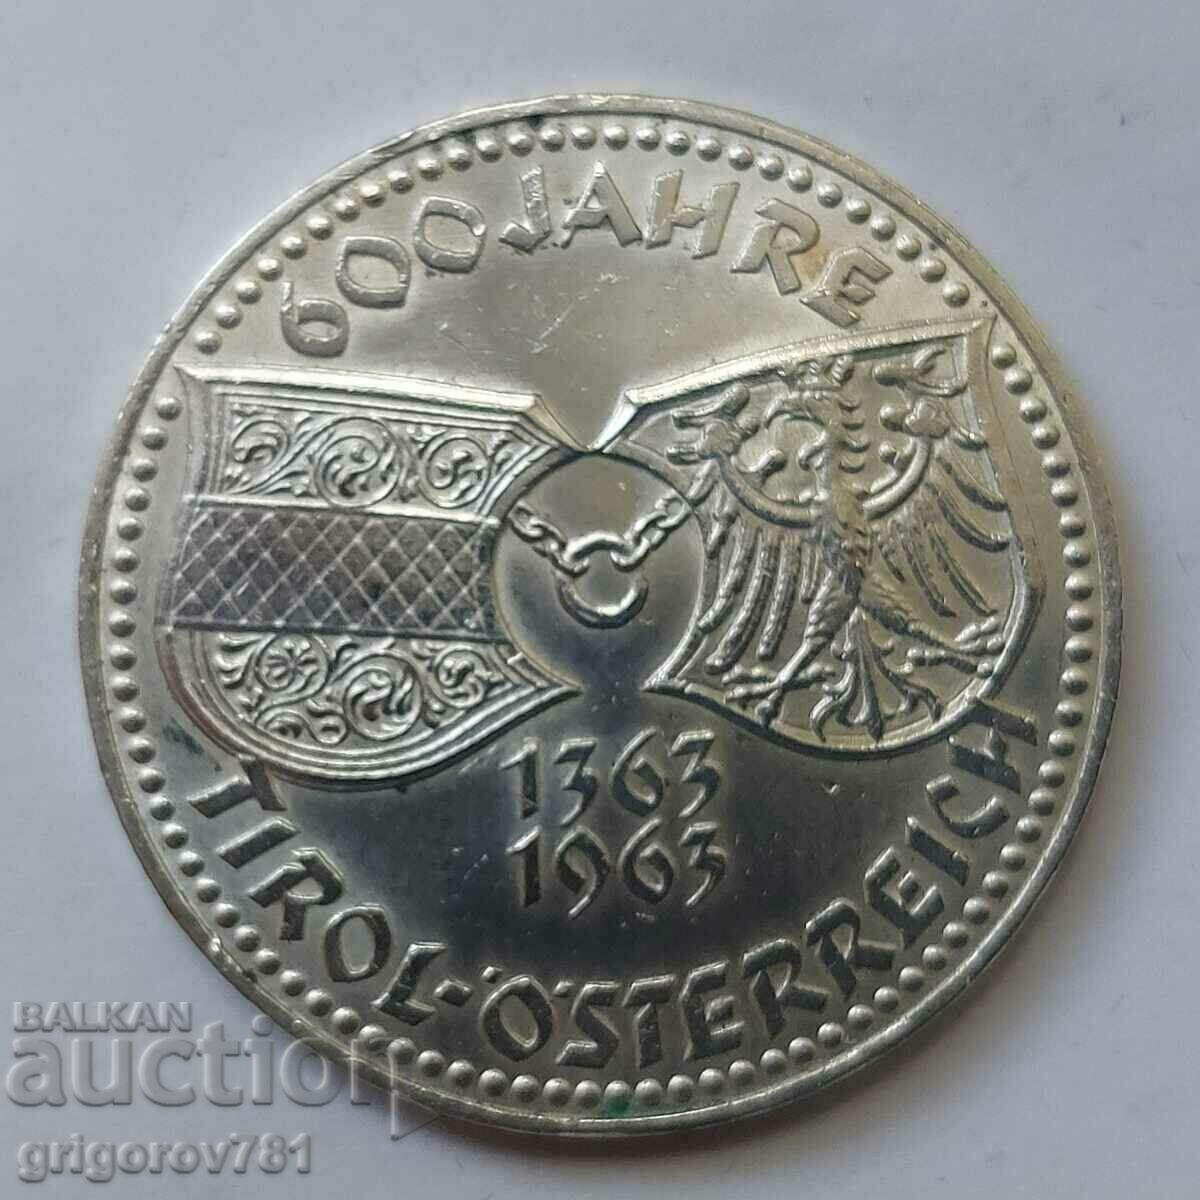 50 Shilling Silver Αυστρία 1963 - Ασημένιο νόμισμα #12